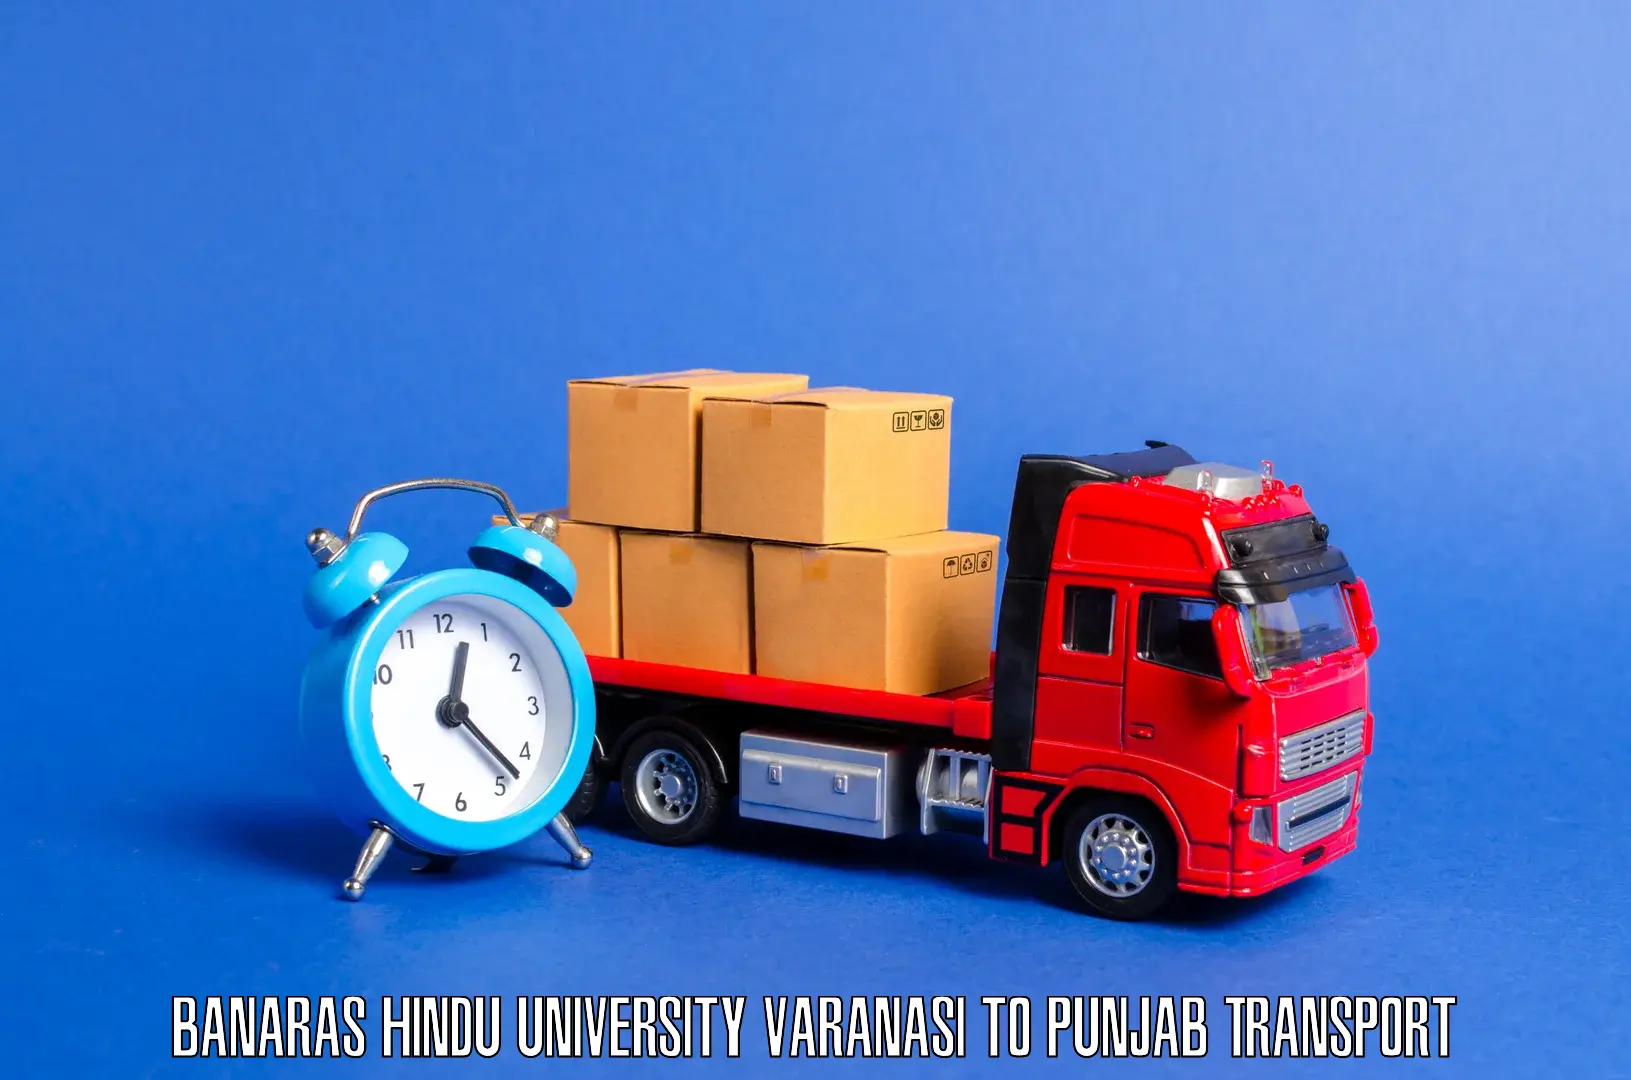 Cargo transportation services Banaras Hindu University Varanasi to Firozpur